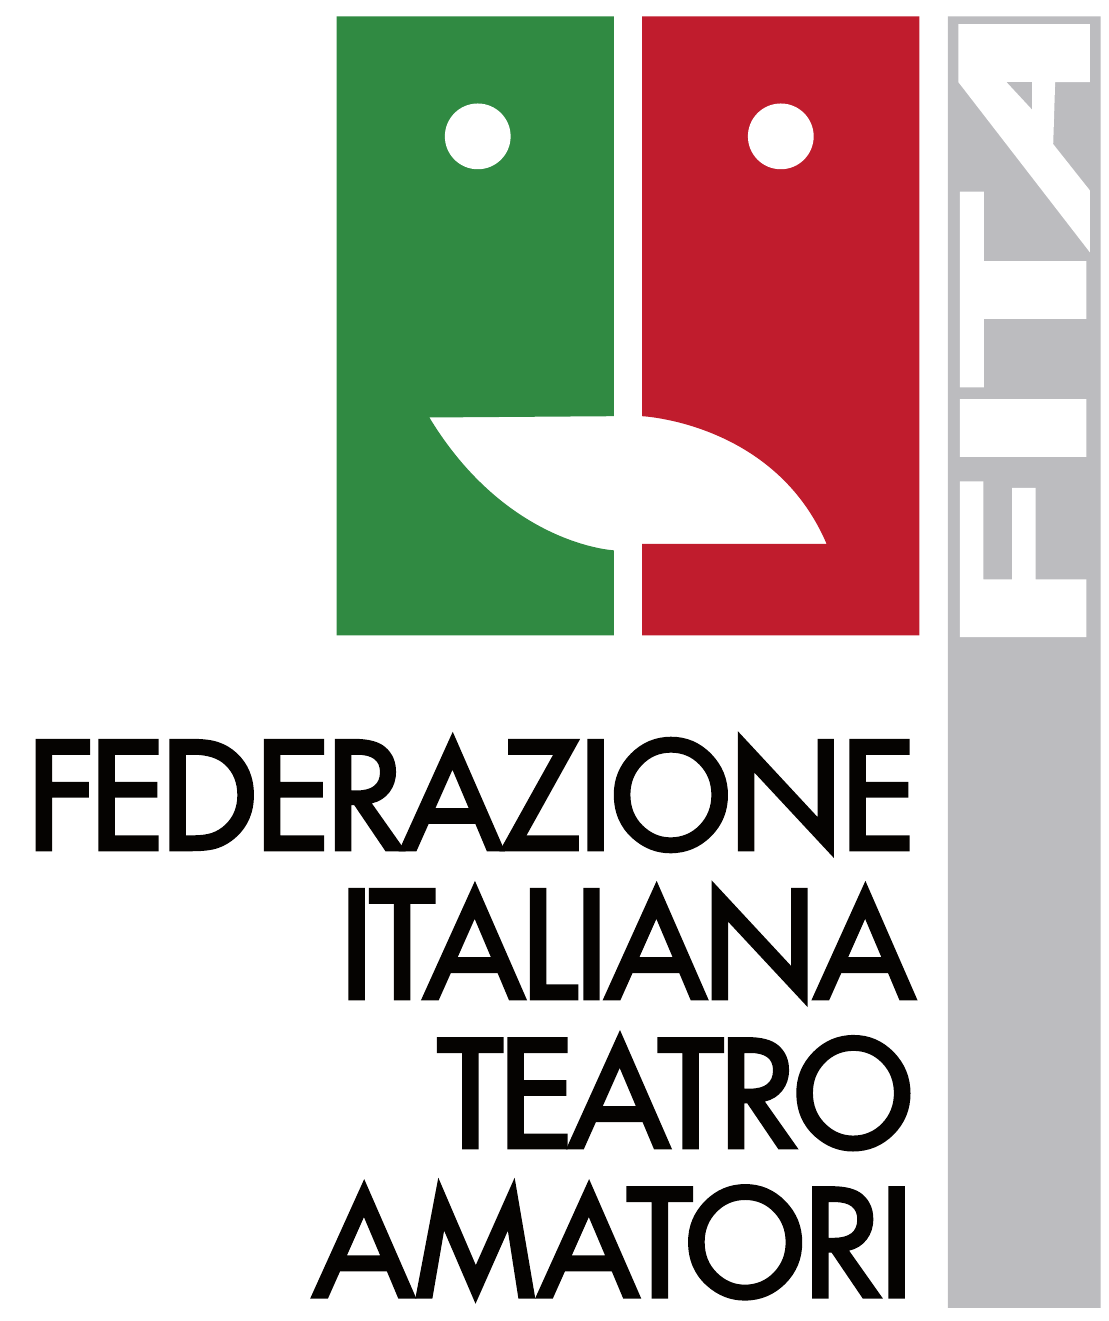 Federazione Italiana Teatro Amatori